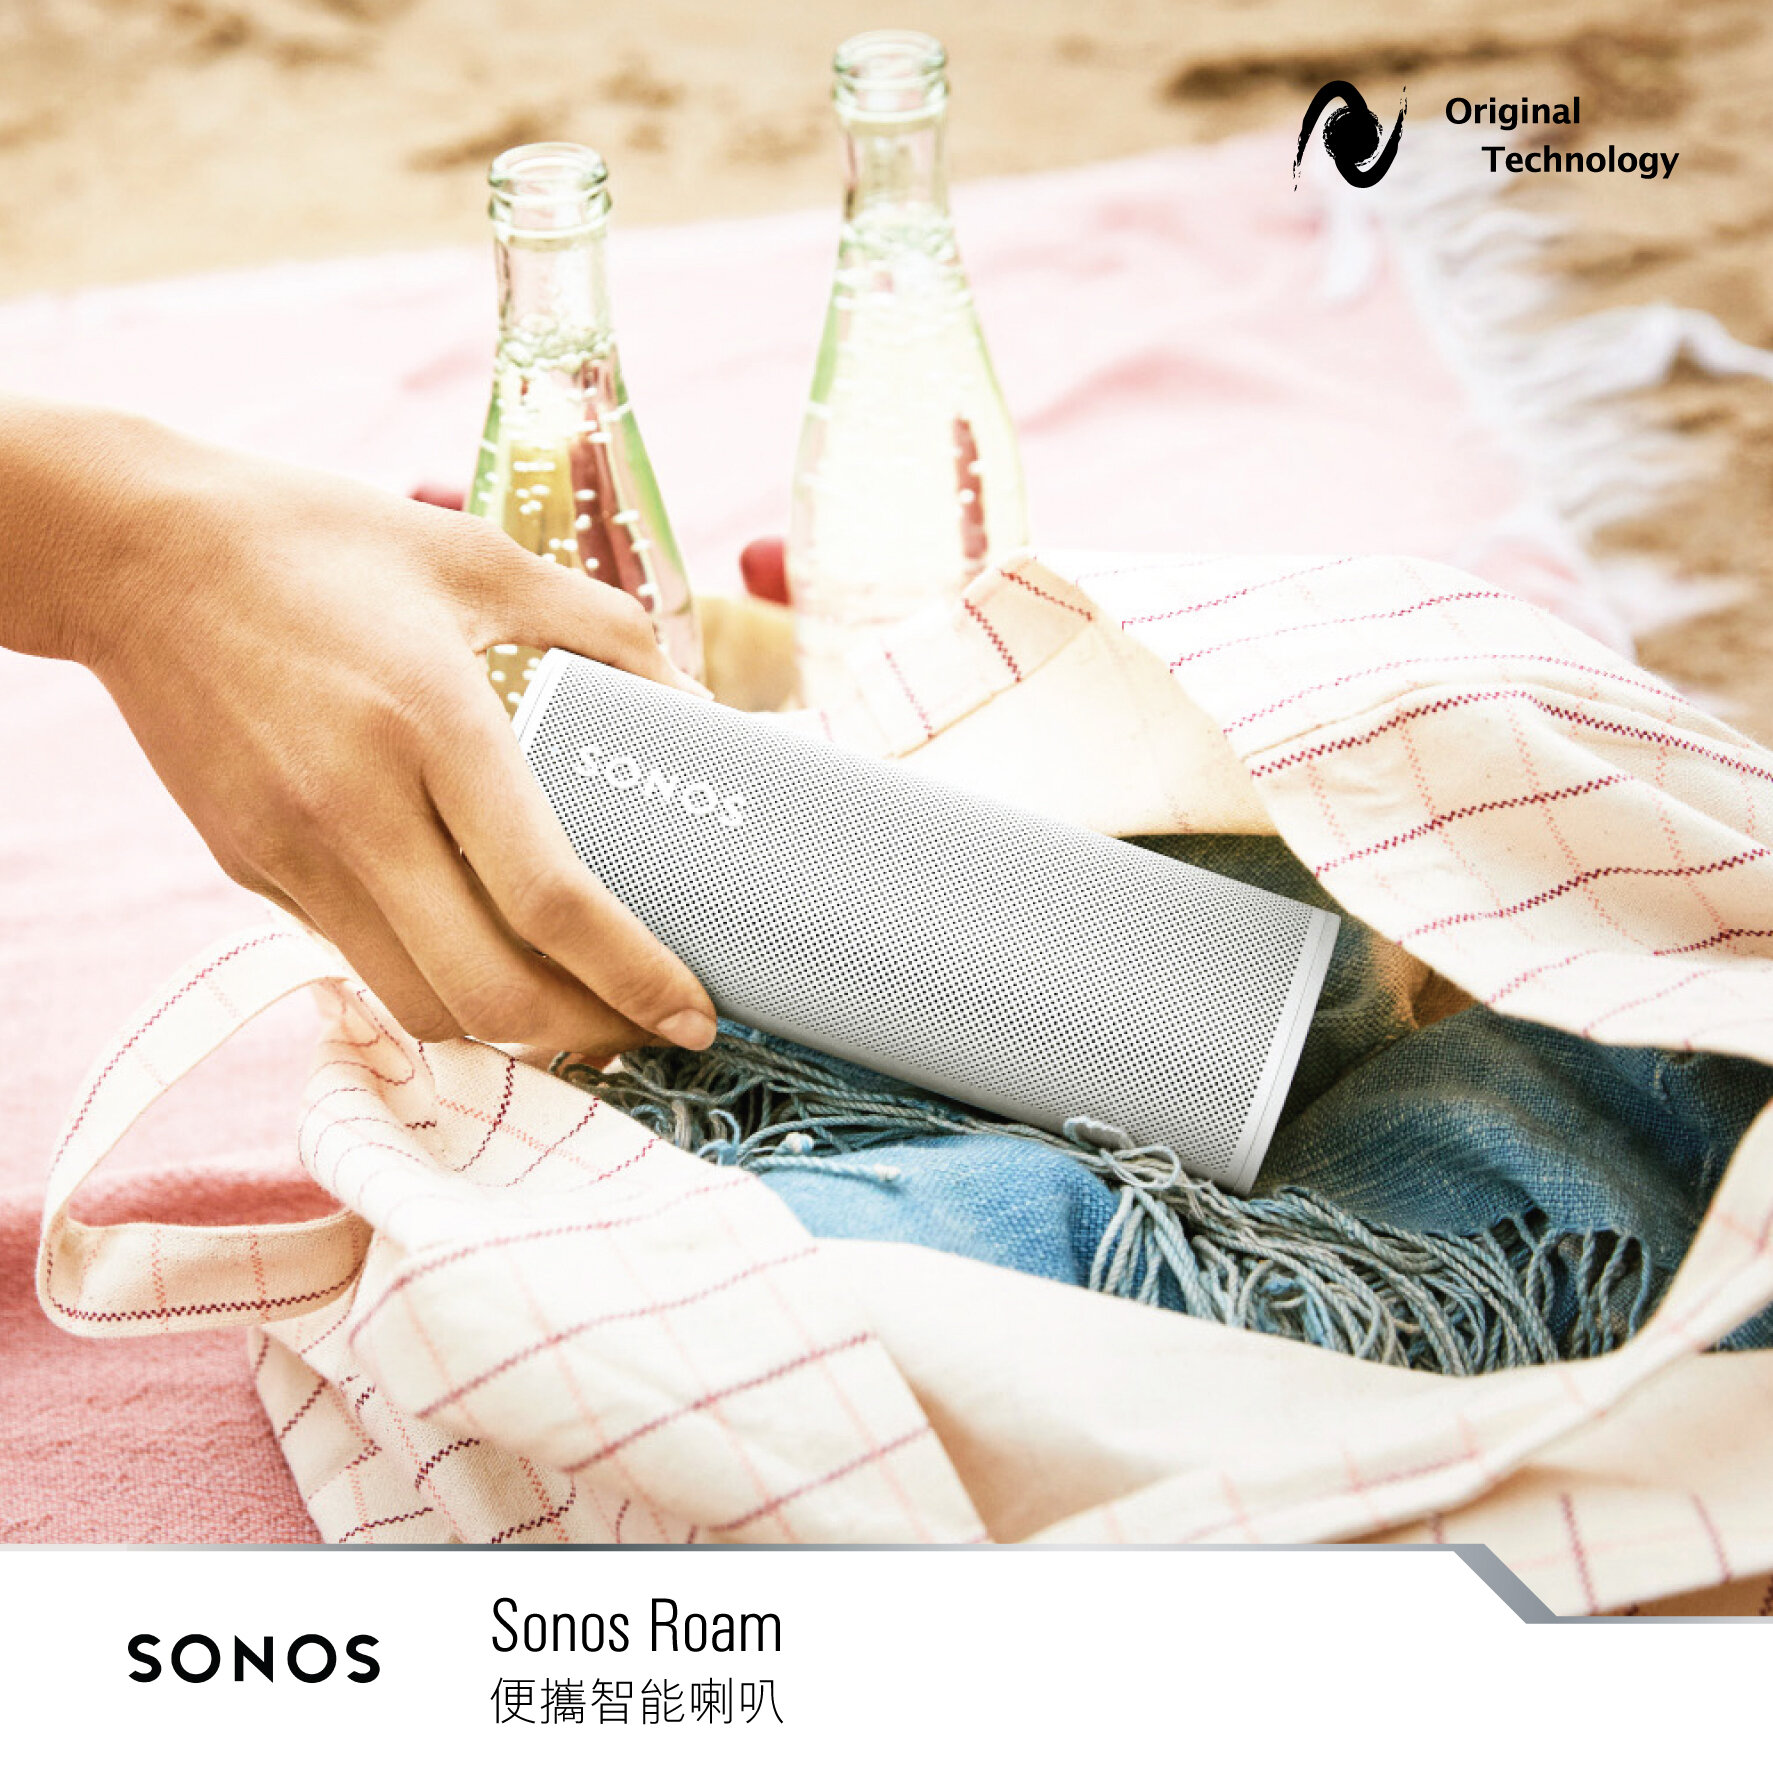 任何地方音樂從無間斷 – Sonos Roam